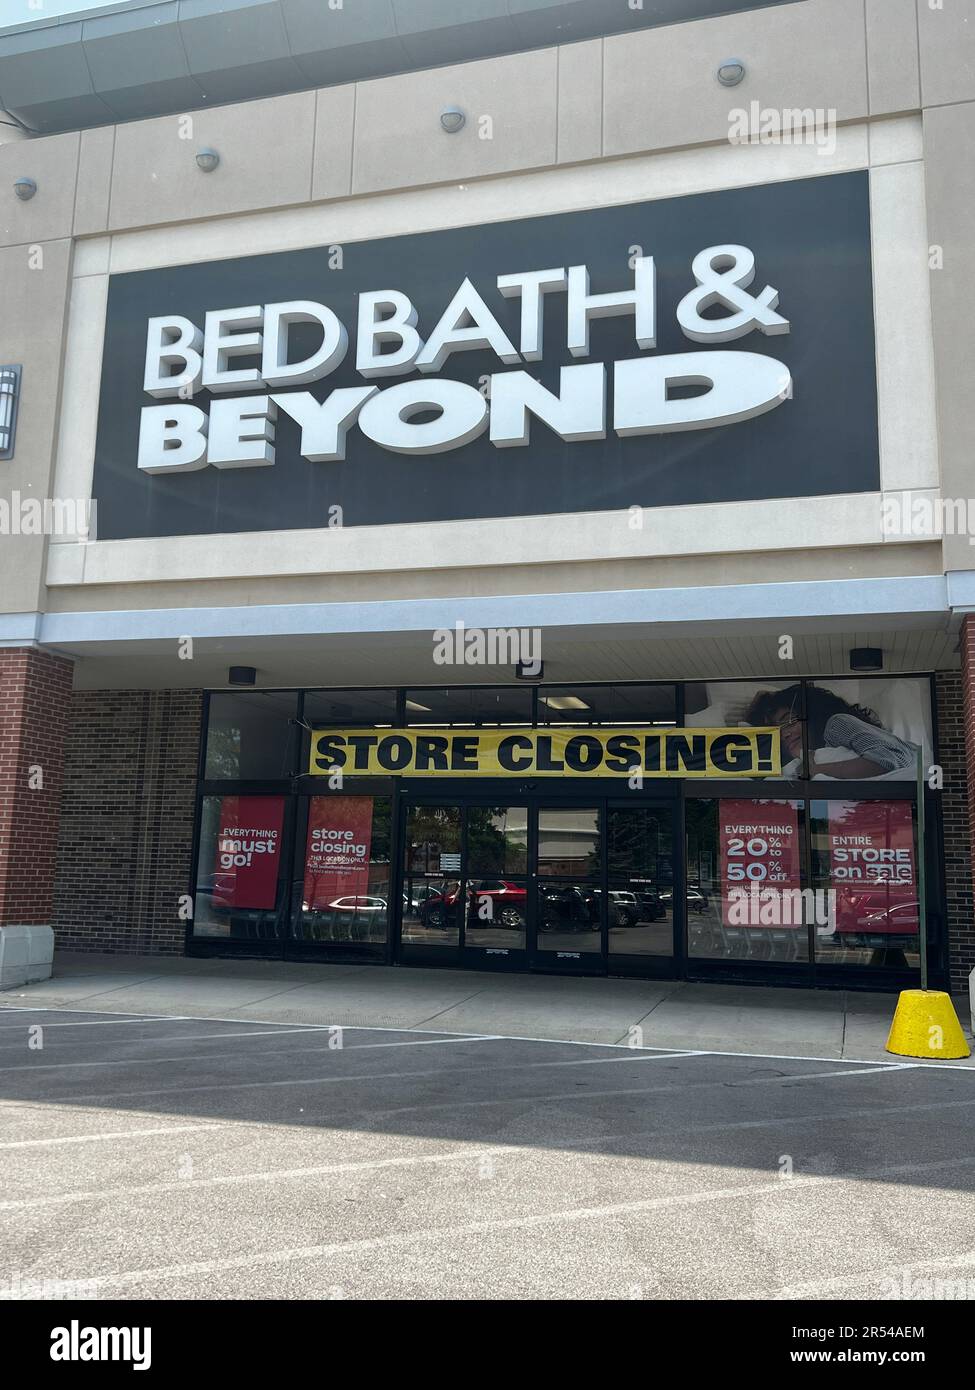 Segnaletica all'esterno di un negozio Bed Bath & Beyond che annuncia che l'intero negozio è in vendita. Il concessionario chiude tutti i negozi dopo la presentazione per il fallimento. Foto Stock